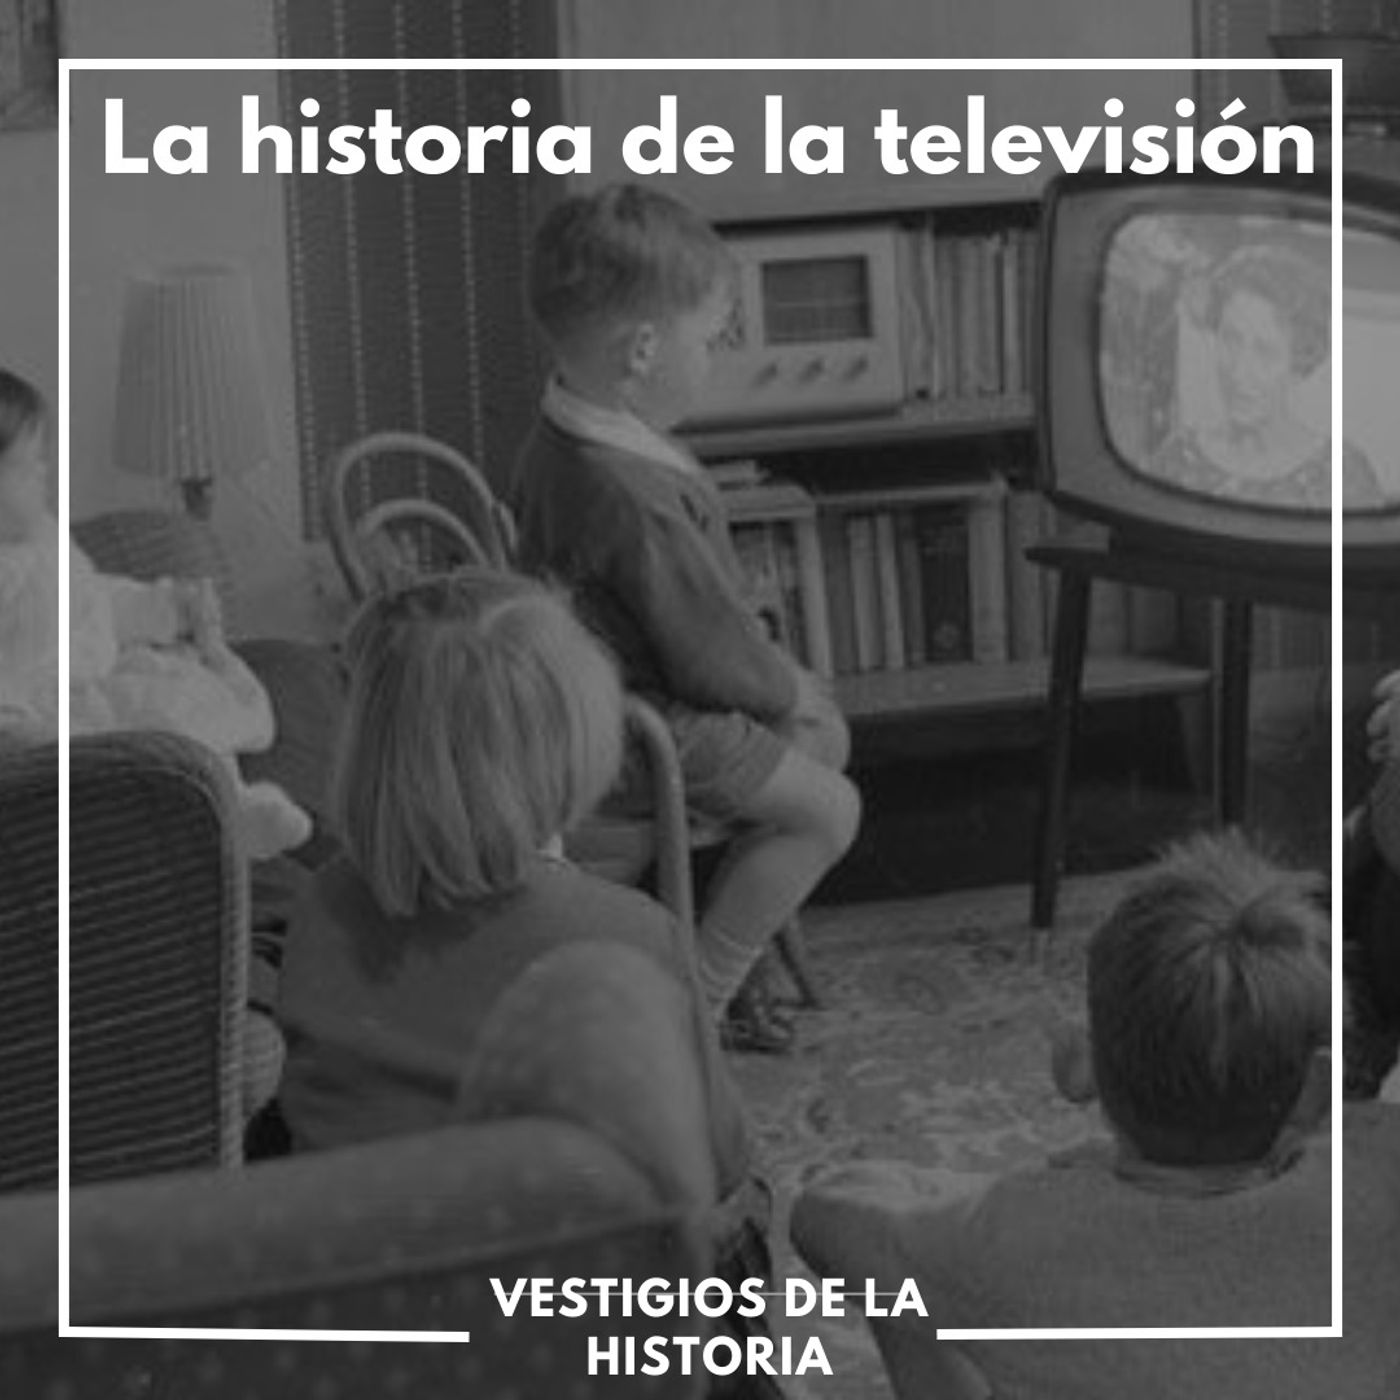 Primera parte: Historia de la Televisión